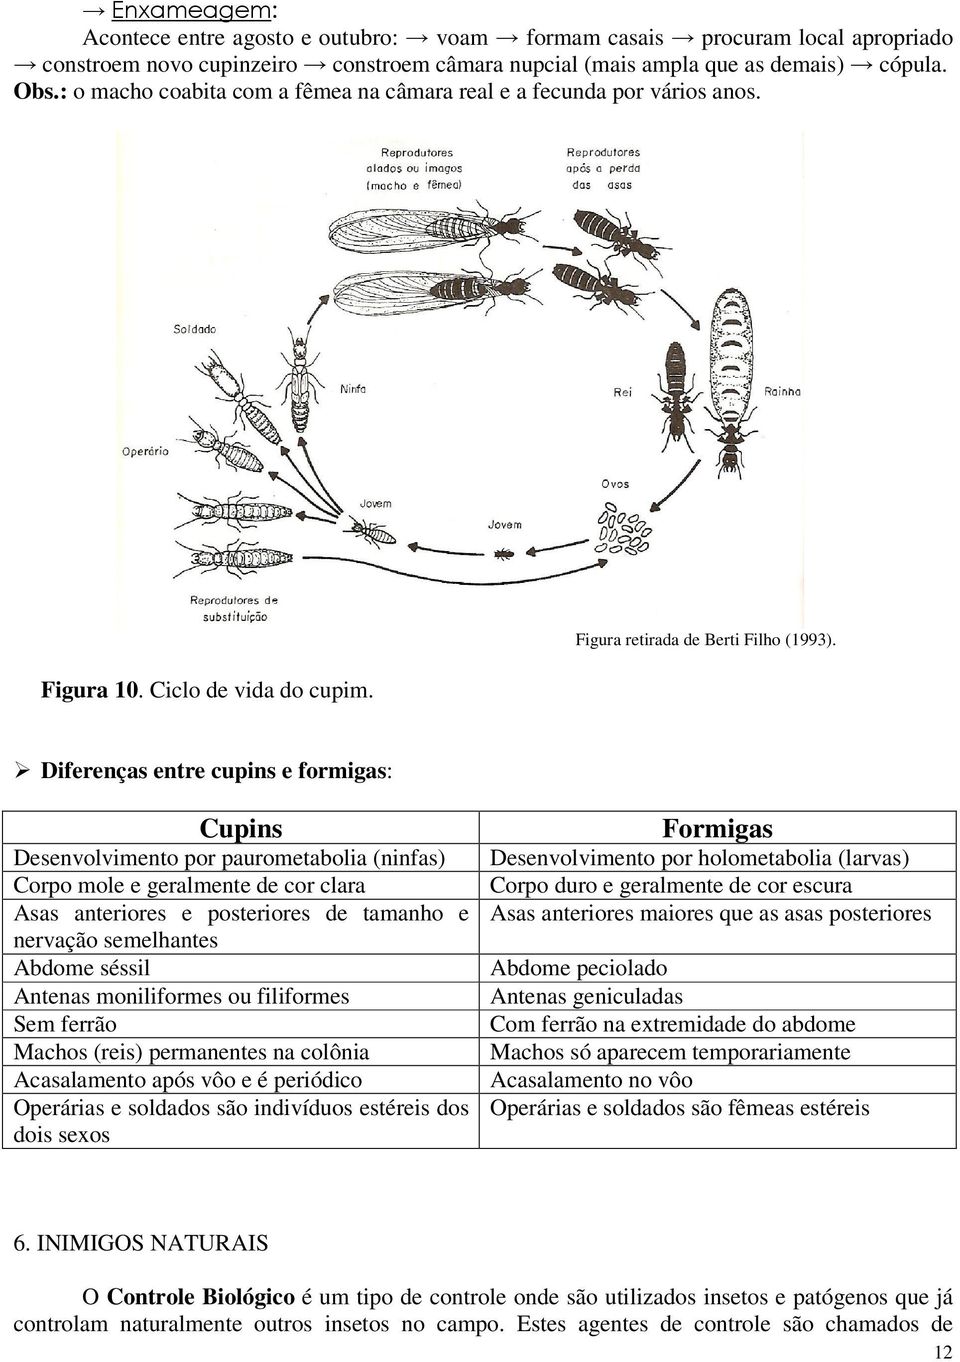 Diferenças entre cupins e formigas: Cupins Desenvolvimento por paurometabolia (ninfas) Corpo mole e geralmente de cor clara Asas anteriores e posteriores de tamanho e nervação semelhantes Abdome